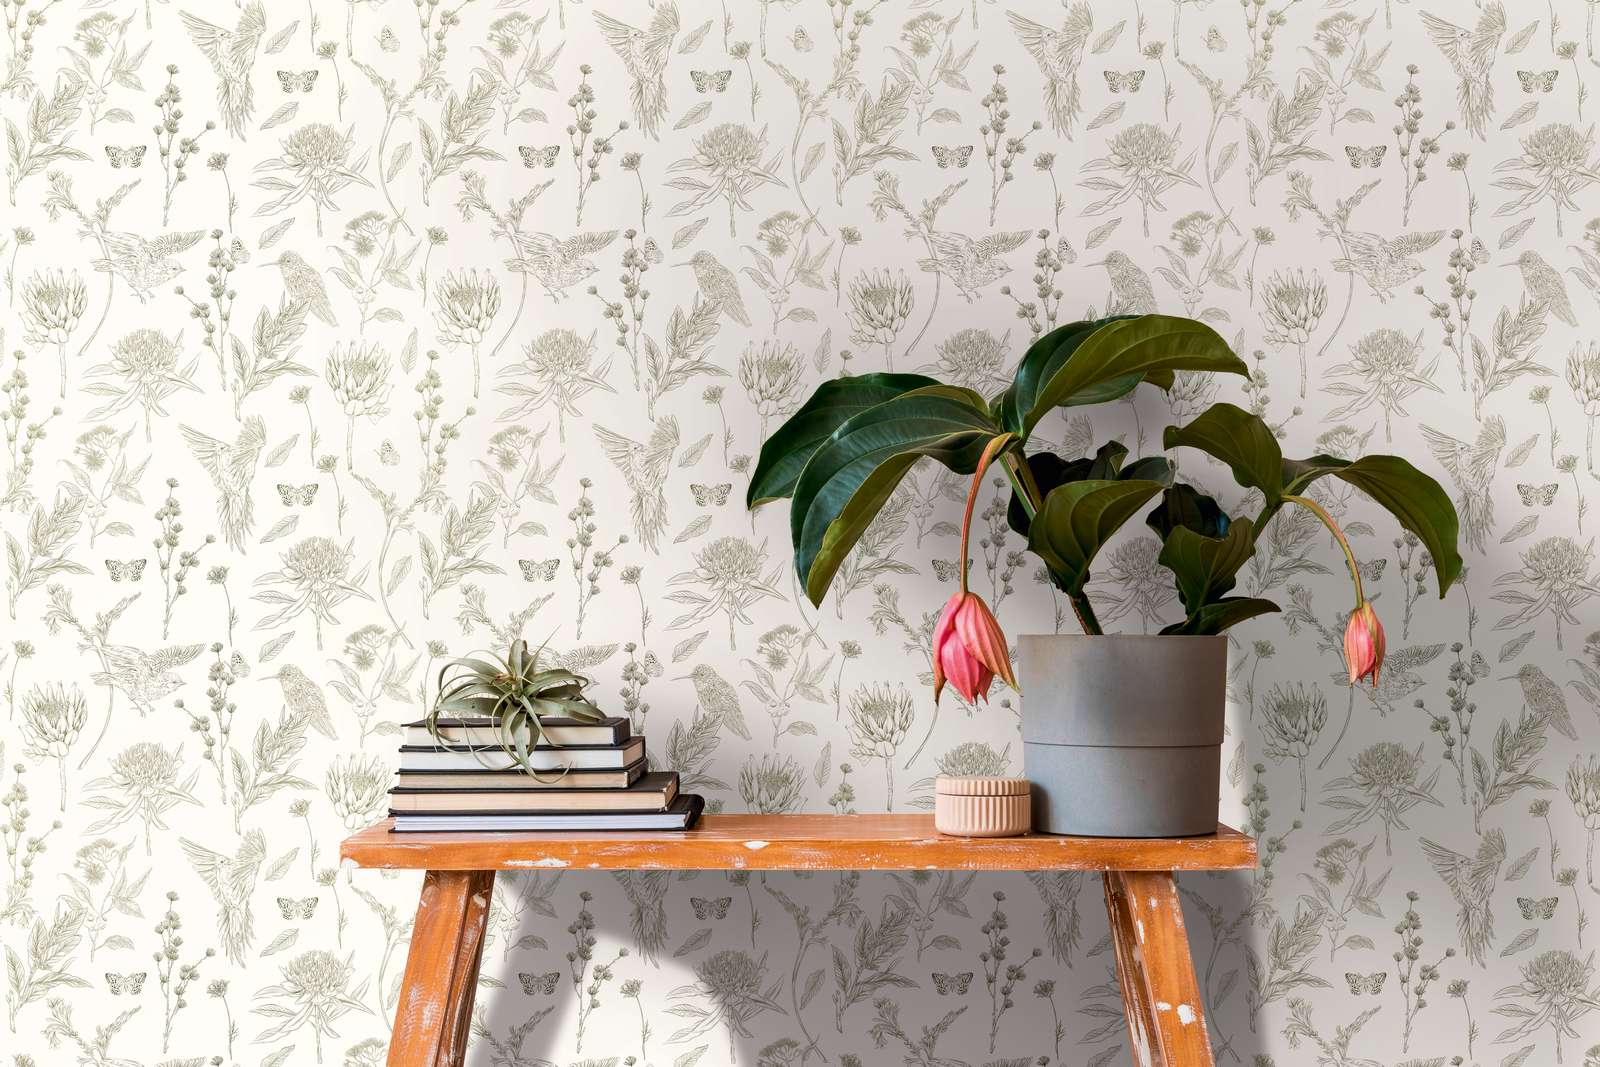             Floral wallpaper with birds & butterflies textured matt - white, green
        